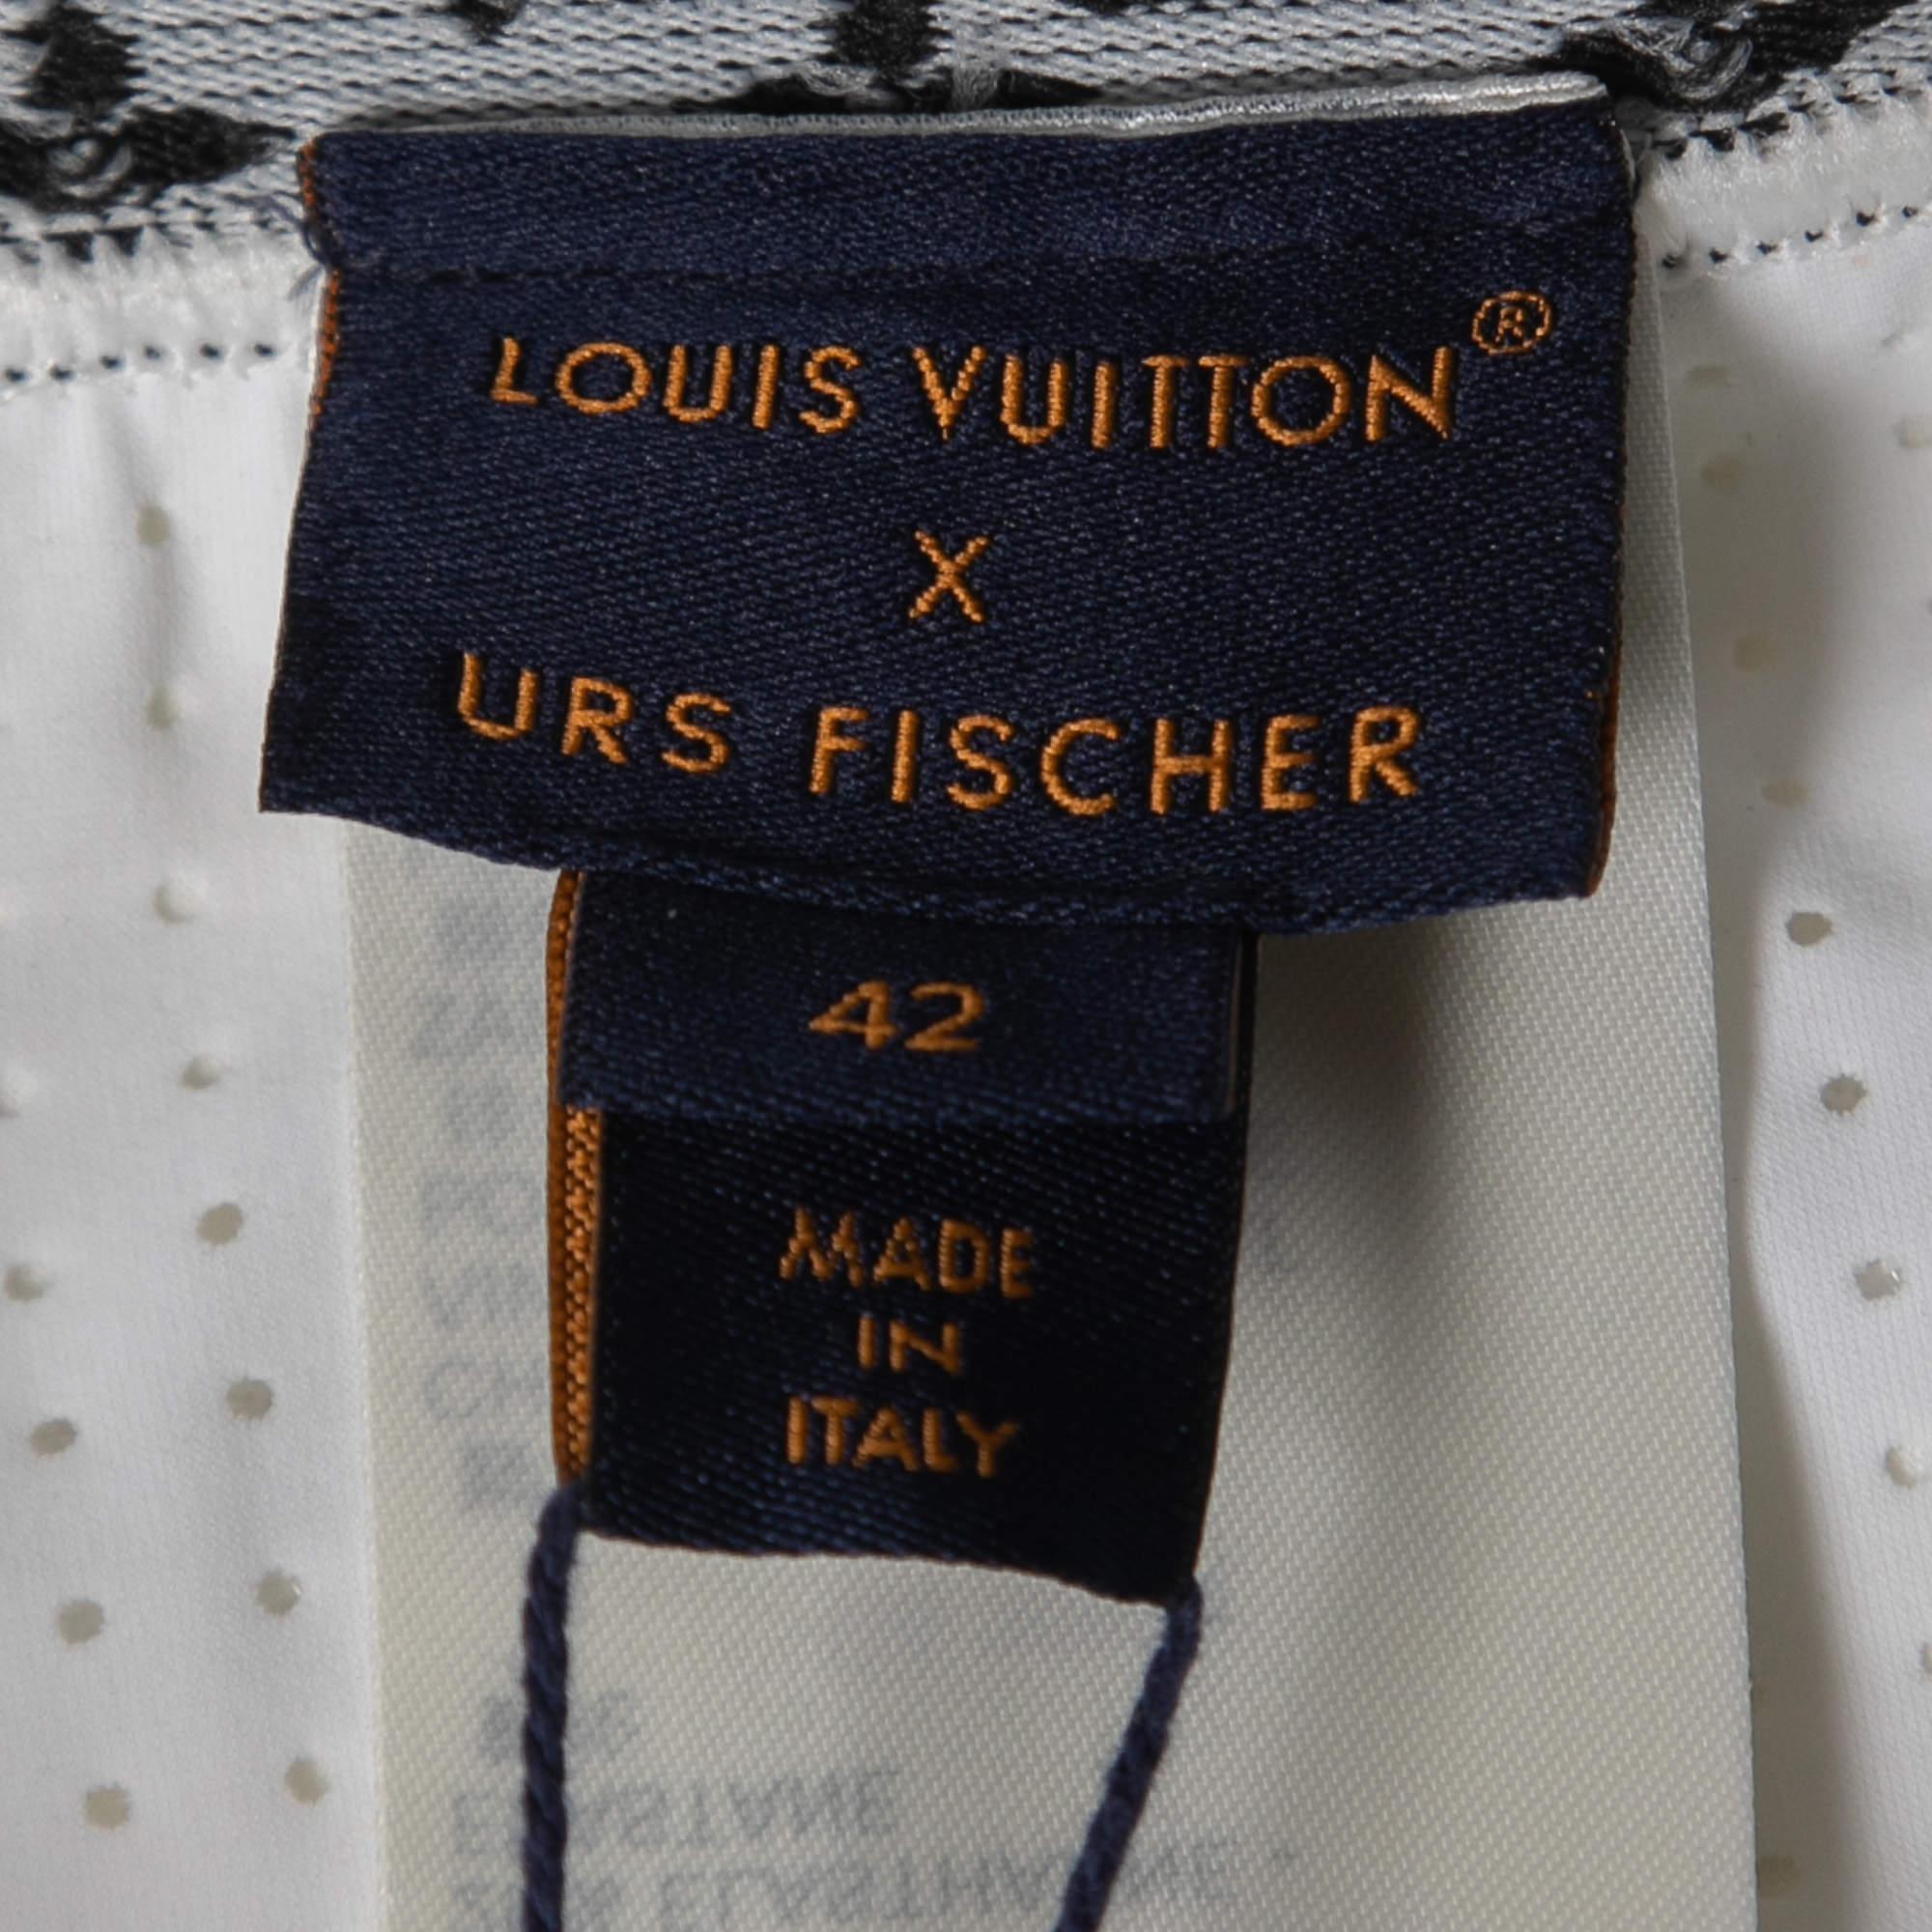 Louis Vuitton X URS Fischer White Jersey Flight Mode Cycling Shorts L 2